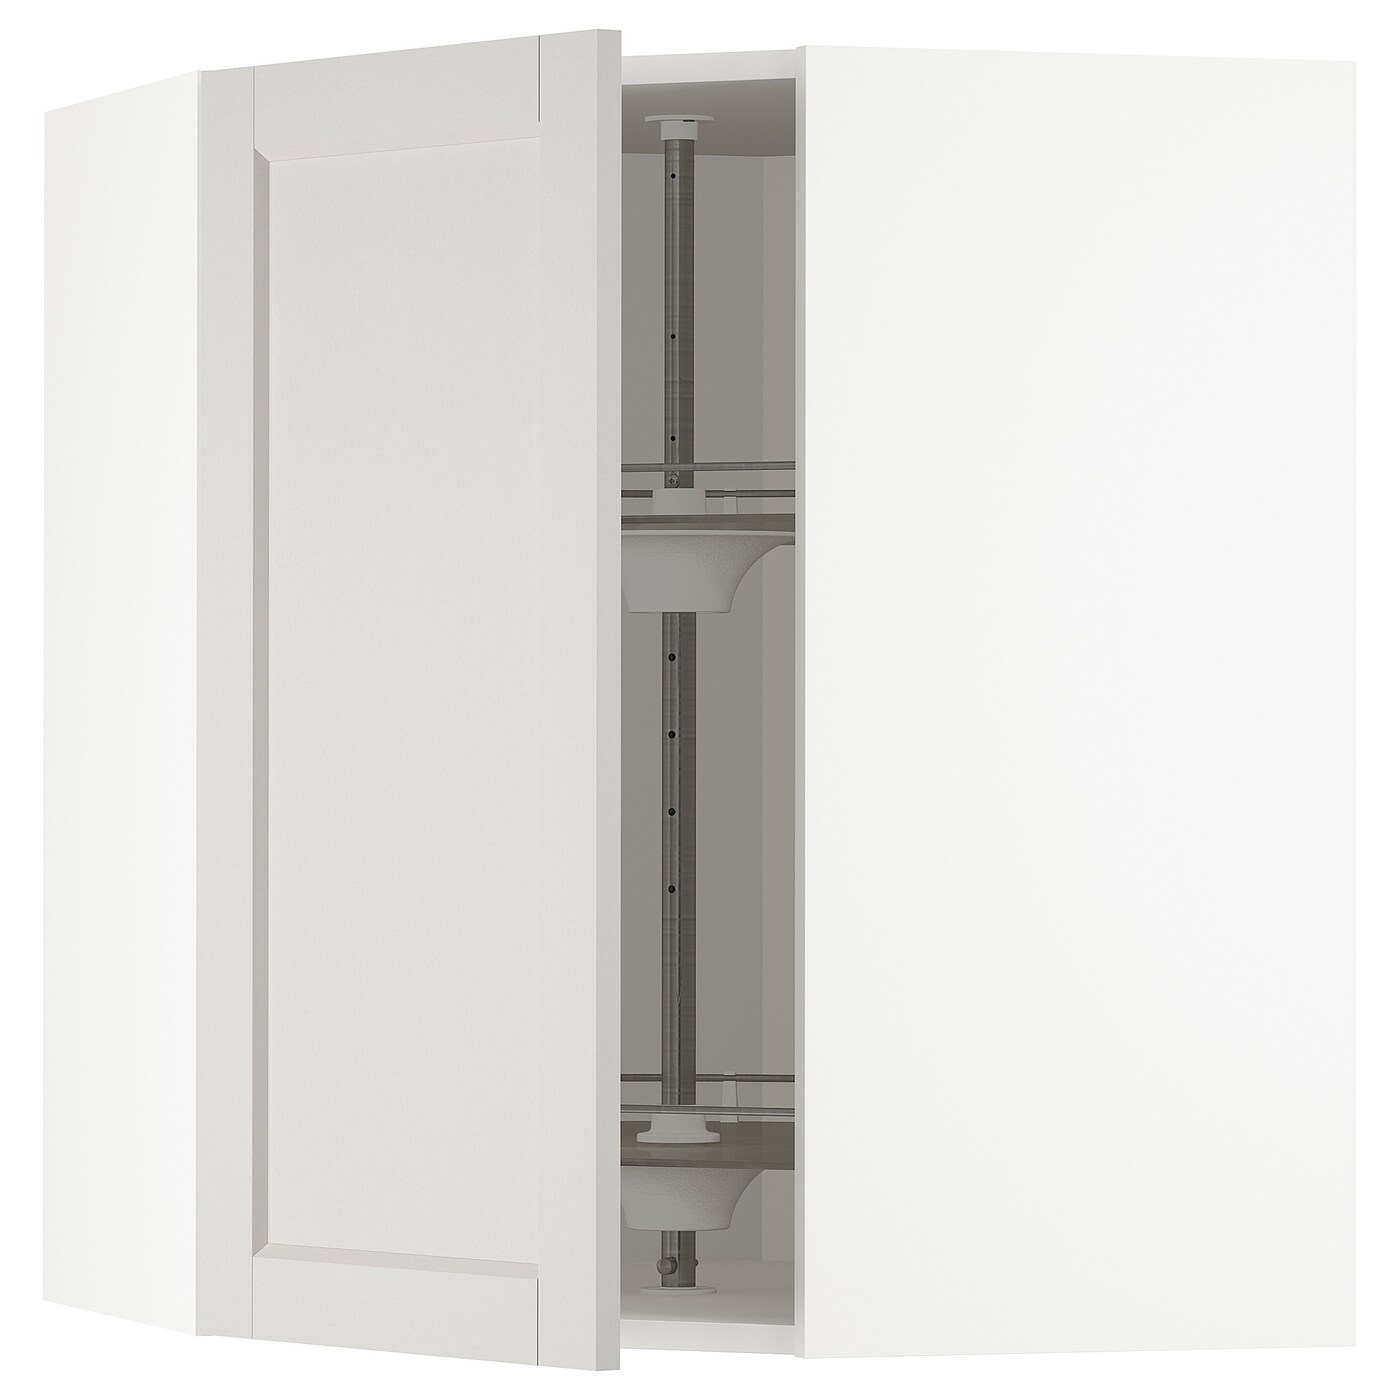 Угловой навесной шкаф с каруселью - METOD  IKEA/  МЕТОД ИКЕА, 80х68 см, белый/светло-серый